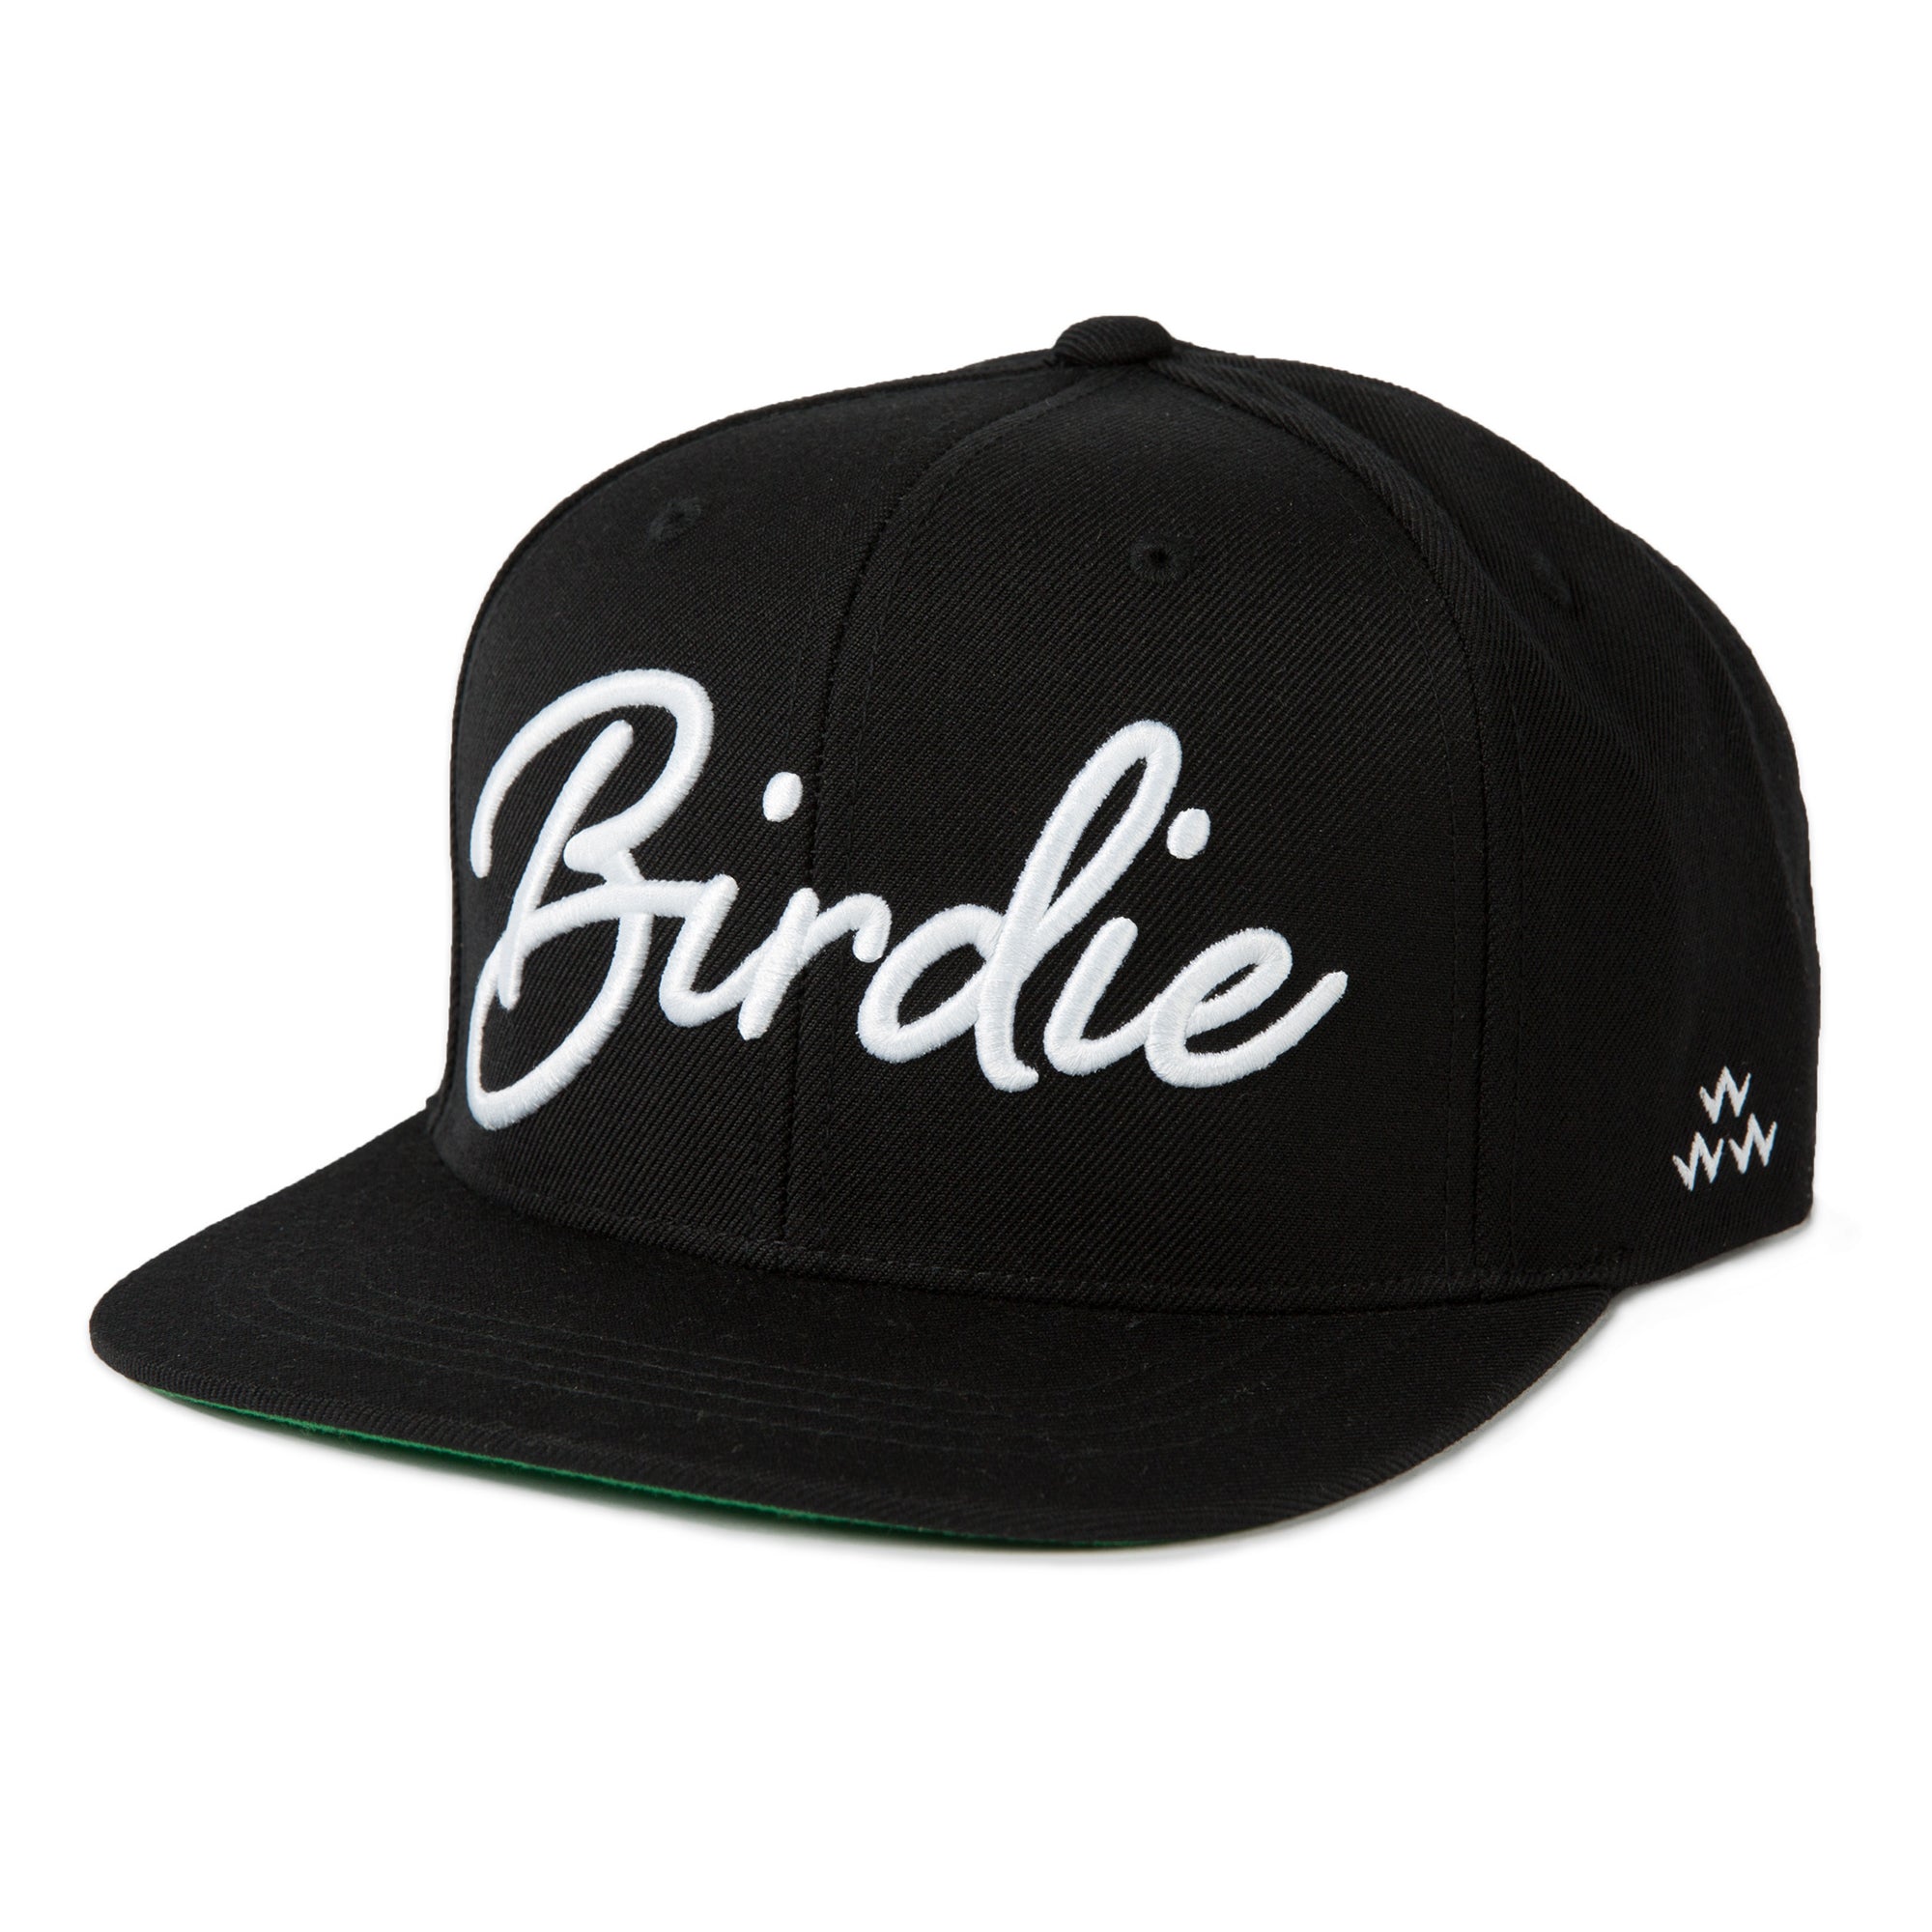 birds-of-condor-birdie-snapback-cap-sn19104-black